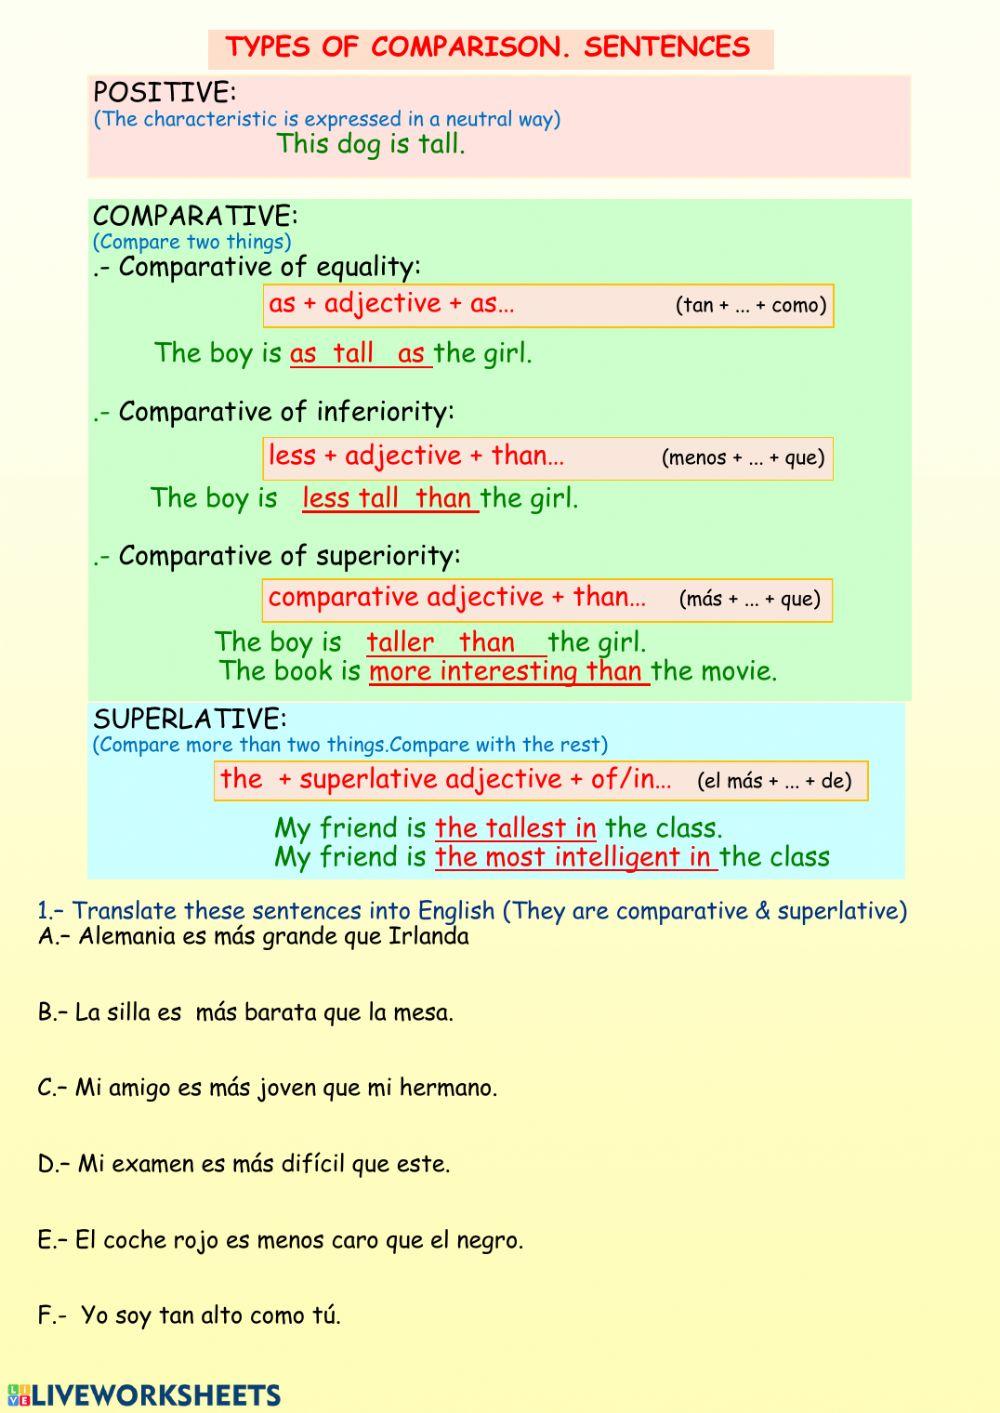 Types of comparison sentences